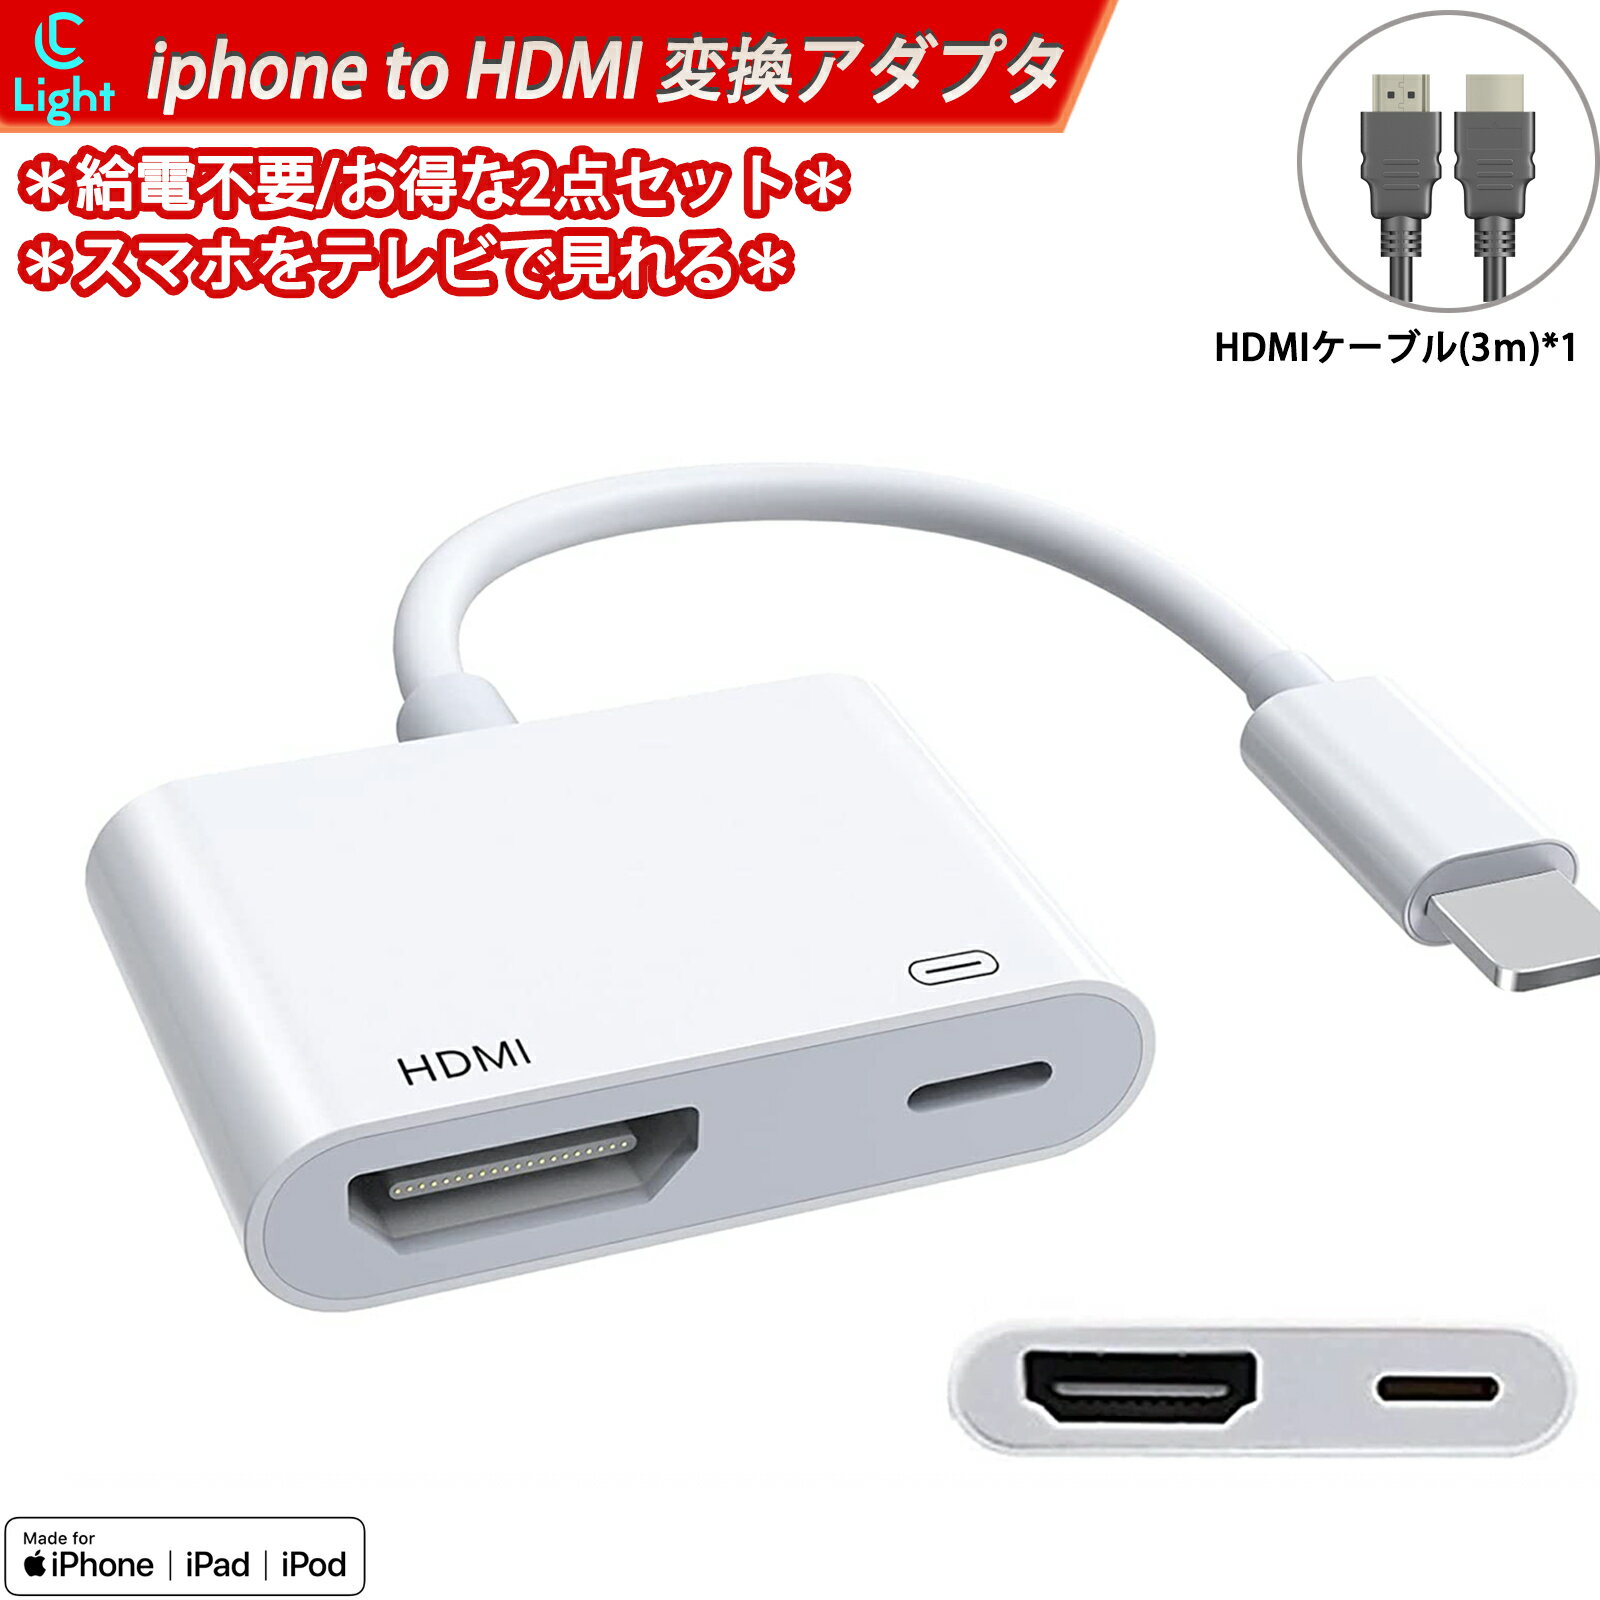 2点 iphone hdmi 変換ケーブル 3m HDMケーブル 付き 純正品質 設定不要 lightning HDMI アダプタ 1080PフルHD 高性能チップを採用 給電不要 ライトニング hdmi avアダプタ 音声同期出力 ゲーム遅延なし av/ TV視聴 最新 iOS対応